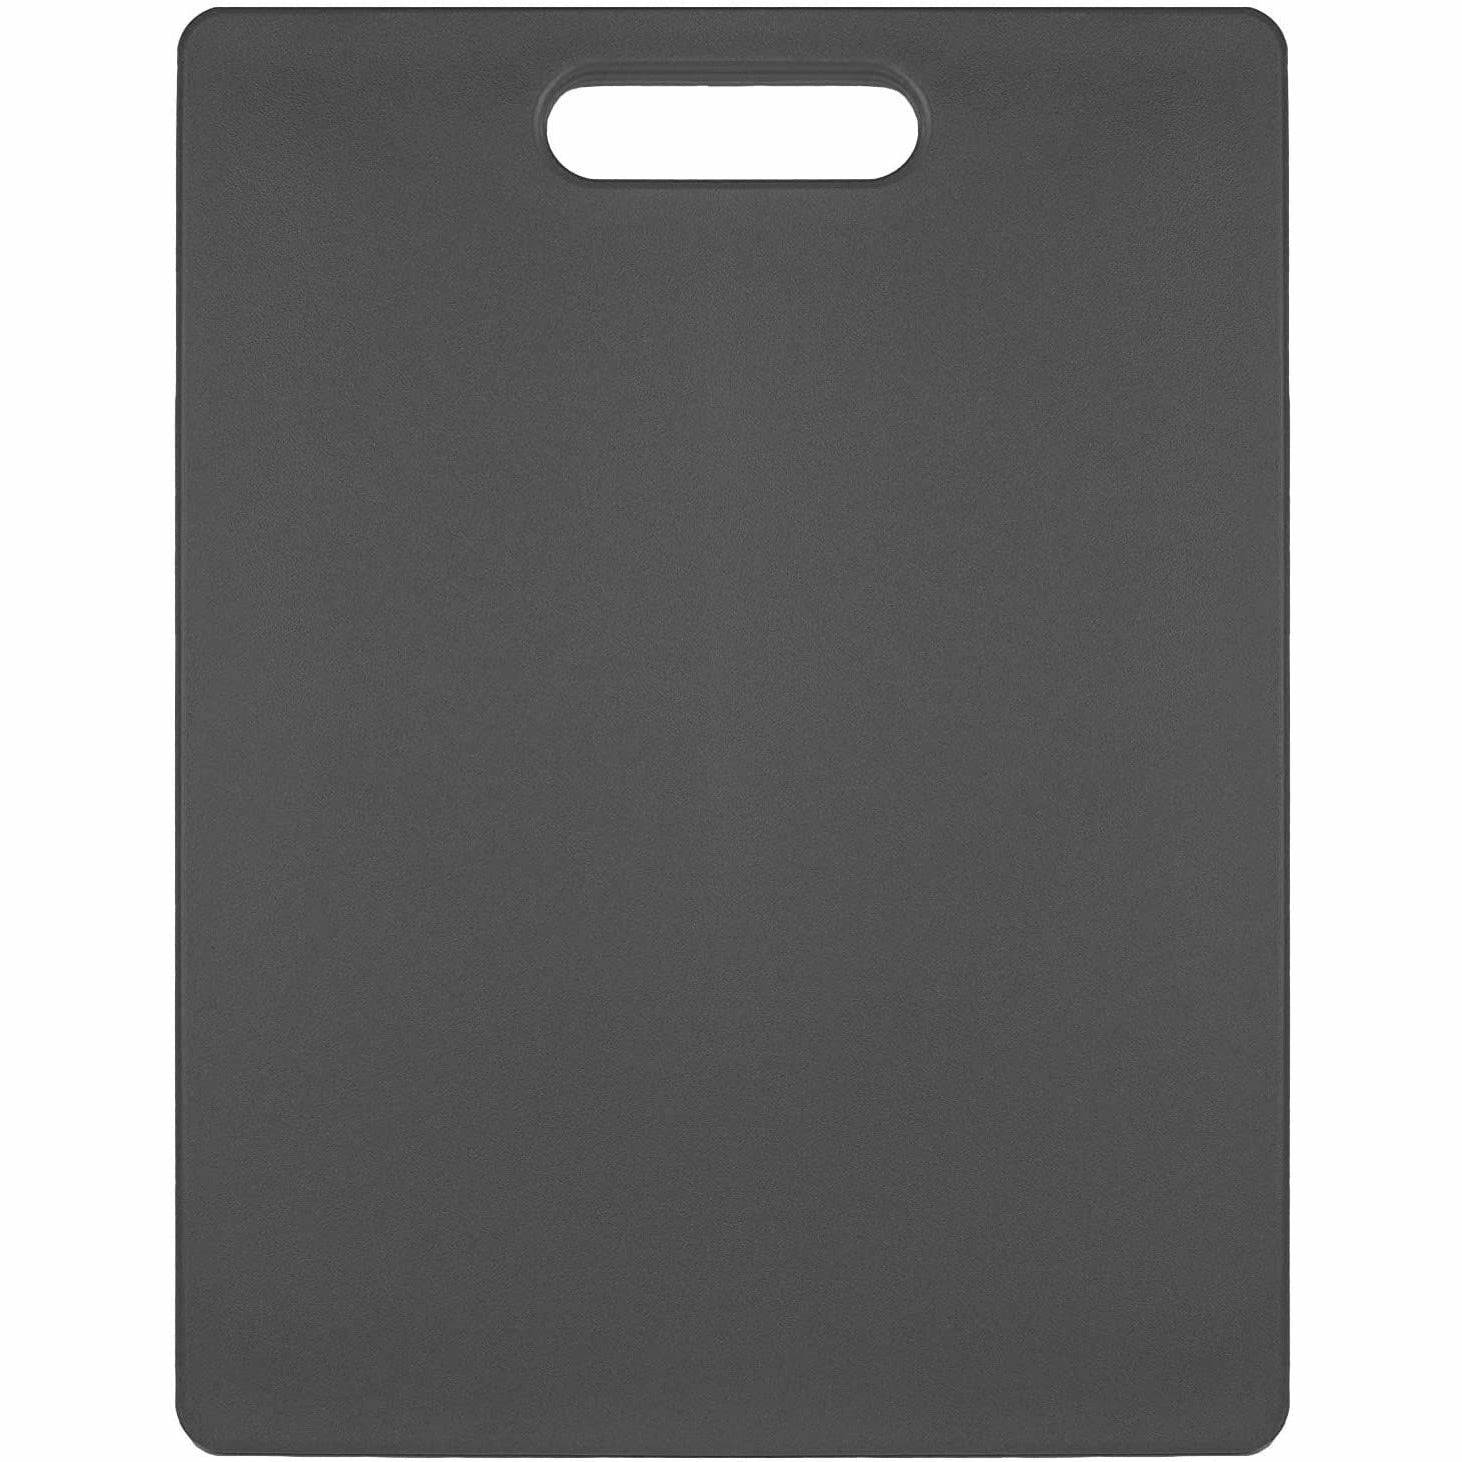 Architec Gripper Polypropylene BPA Free Cutting Board, 11 x 14 Inch, Gray